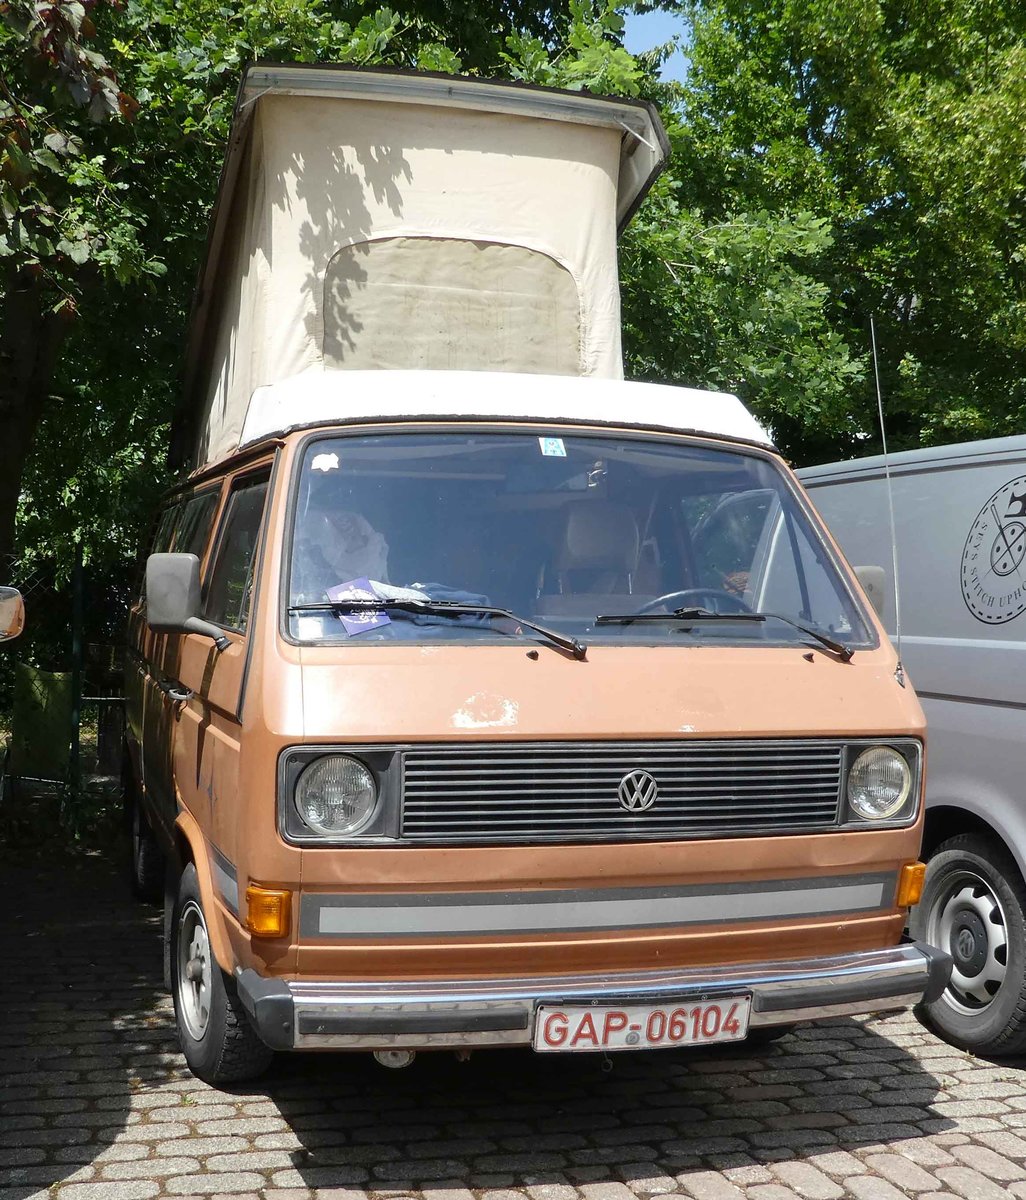 =VW T 3, steht auf dem Ausstellungsgelände in Bad Camberg anl. LOTTERMANN-Bullitreffen im Juni 2019